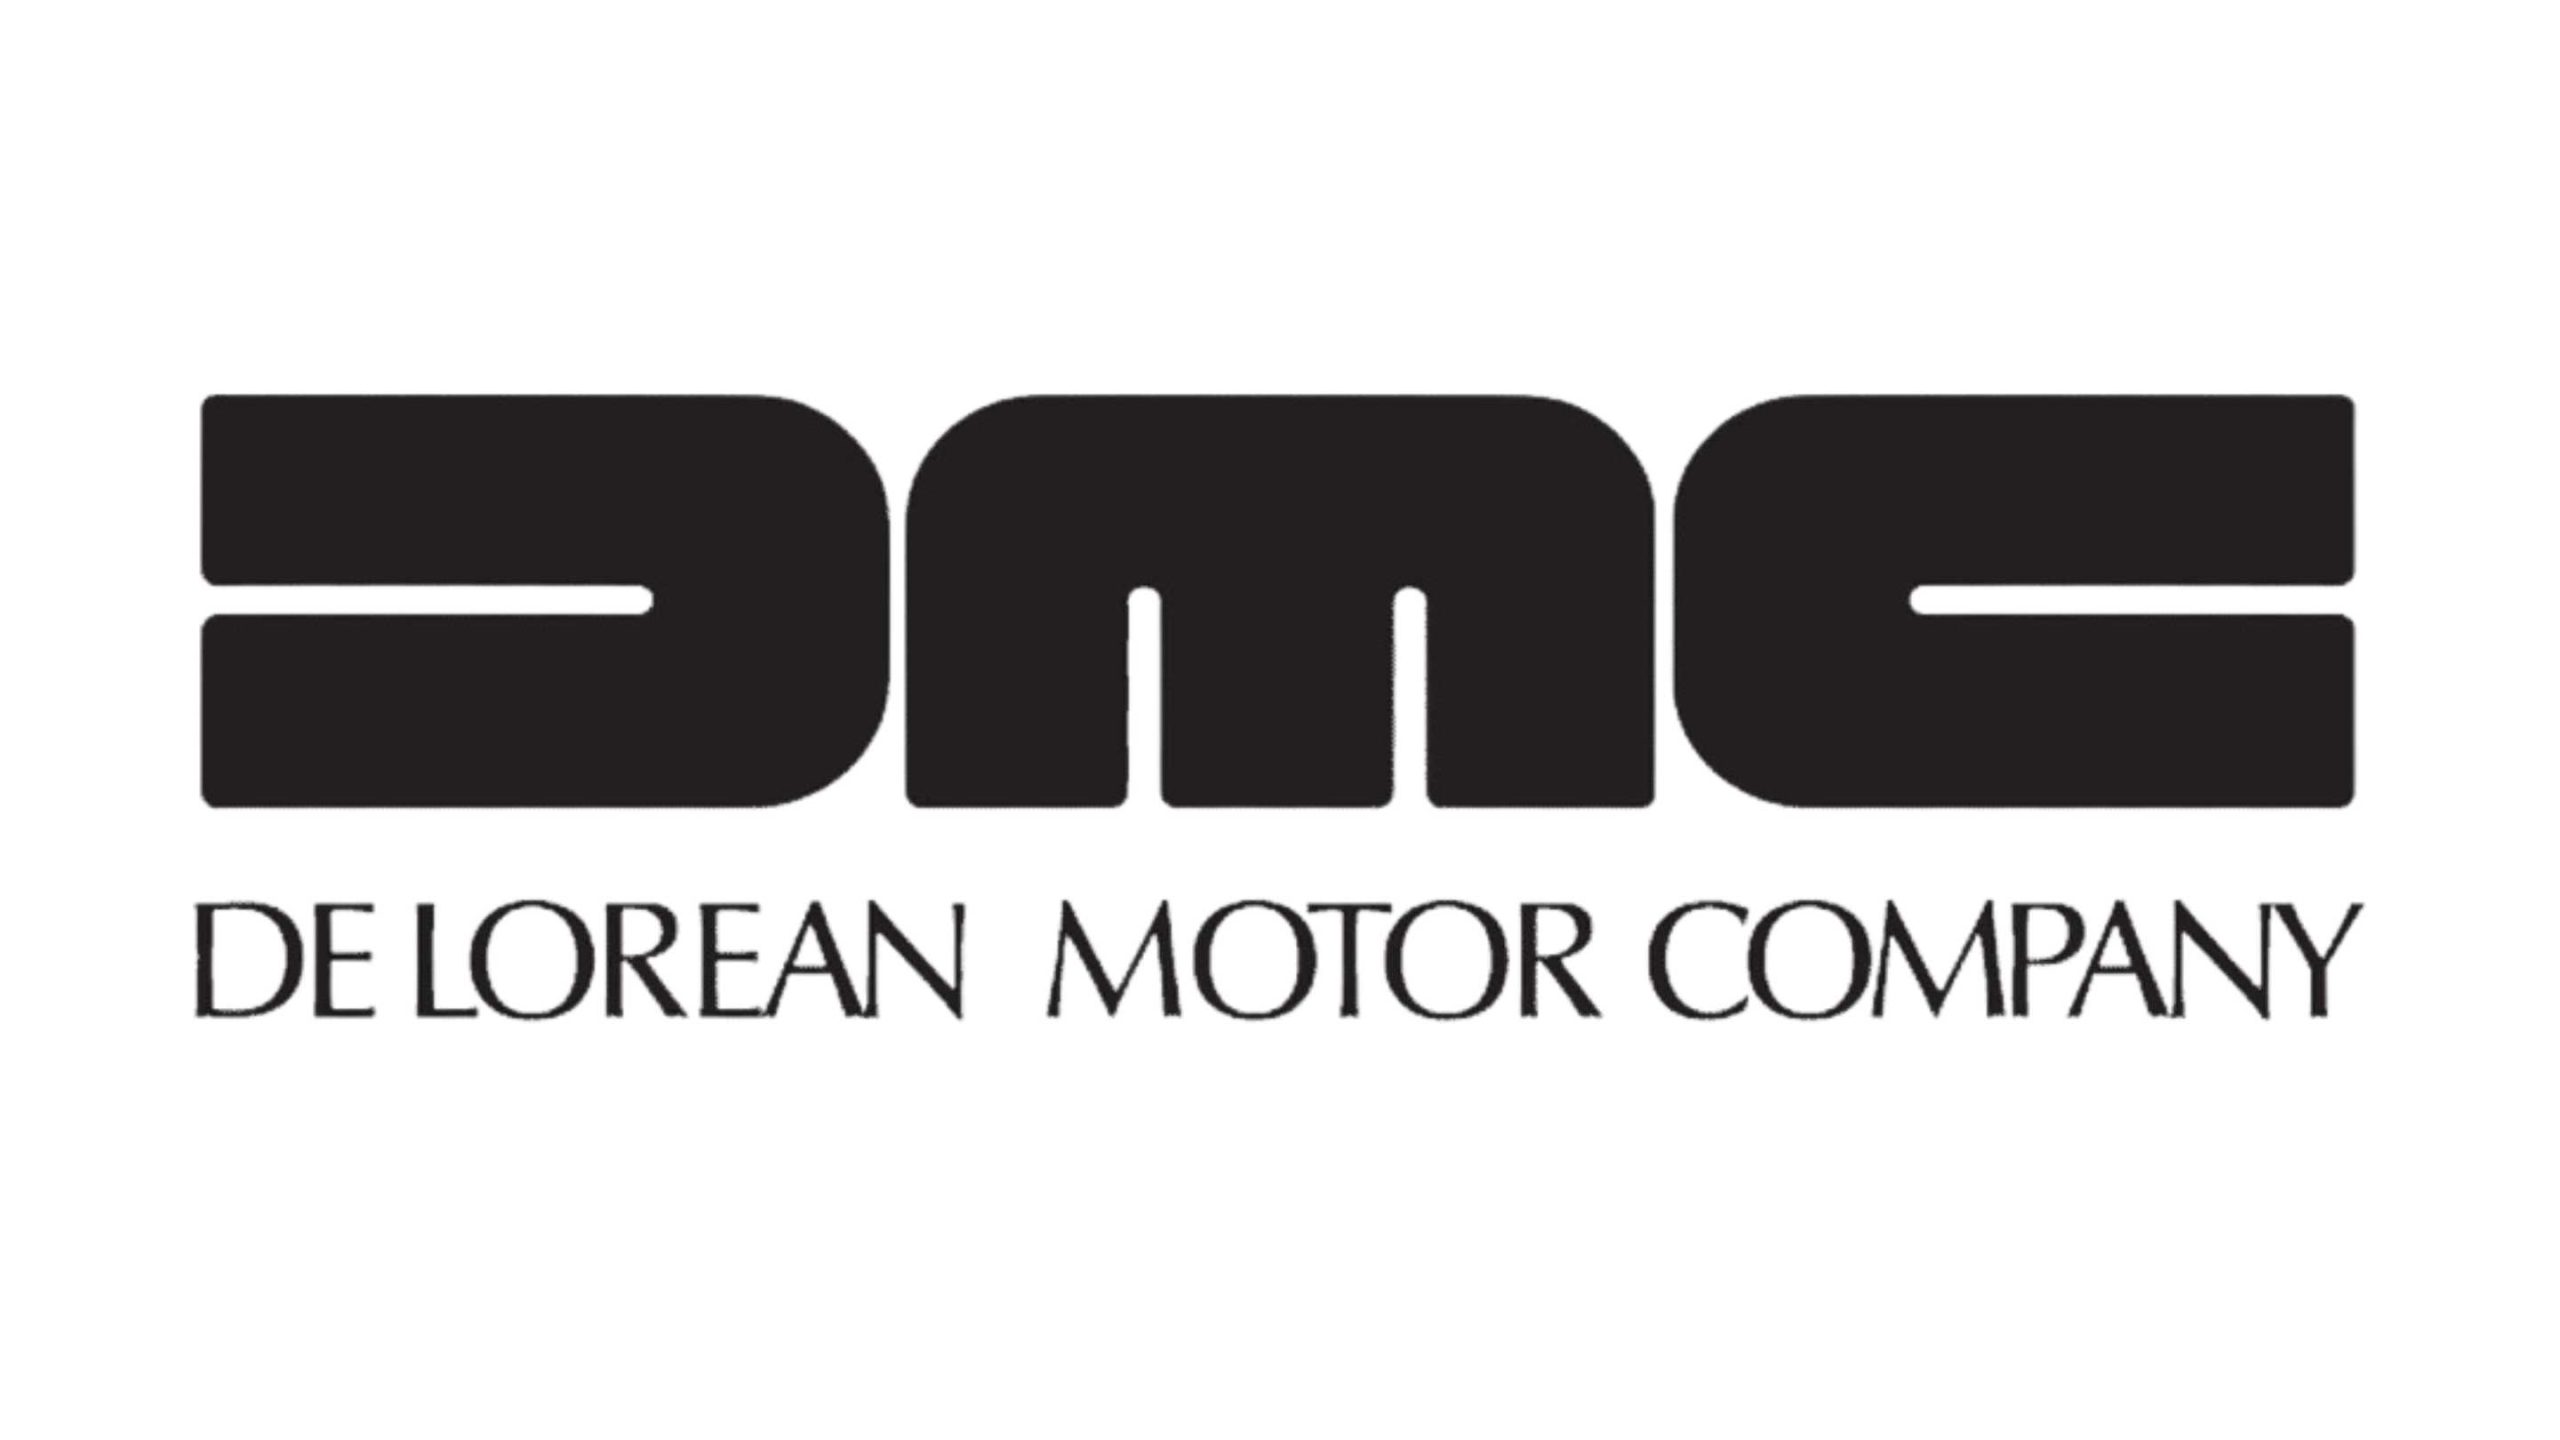 De_lorean_motor_company_logo